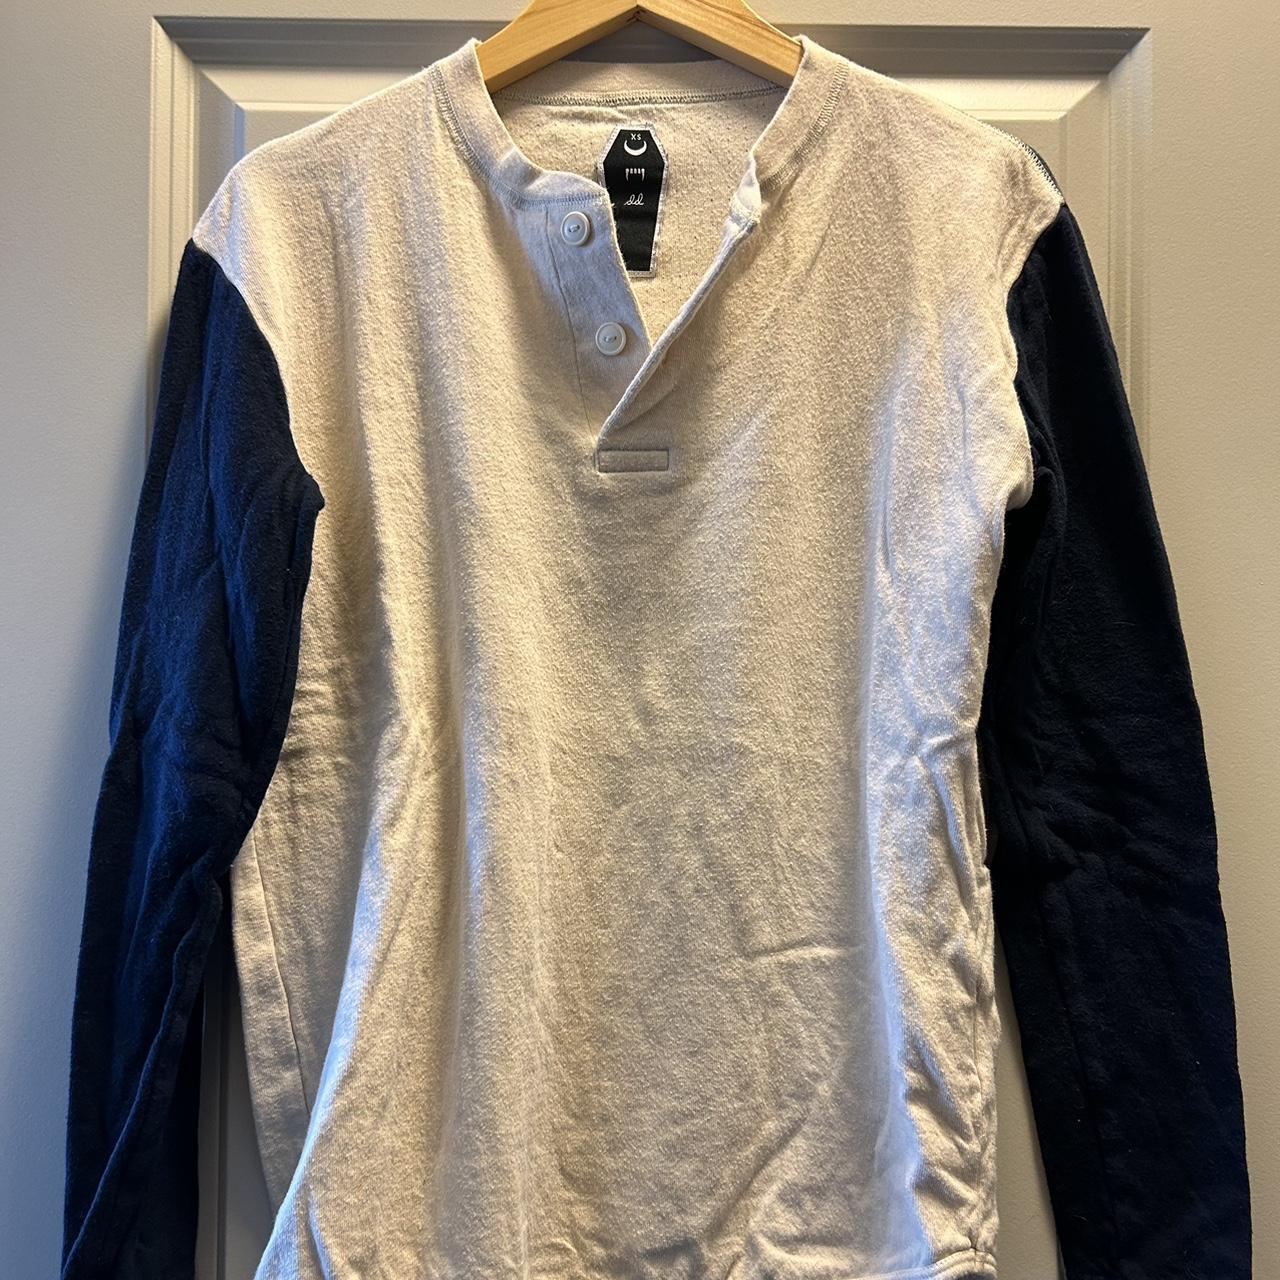 Dropdead Women's Sweatshirt (3)